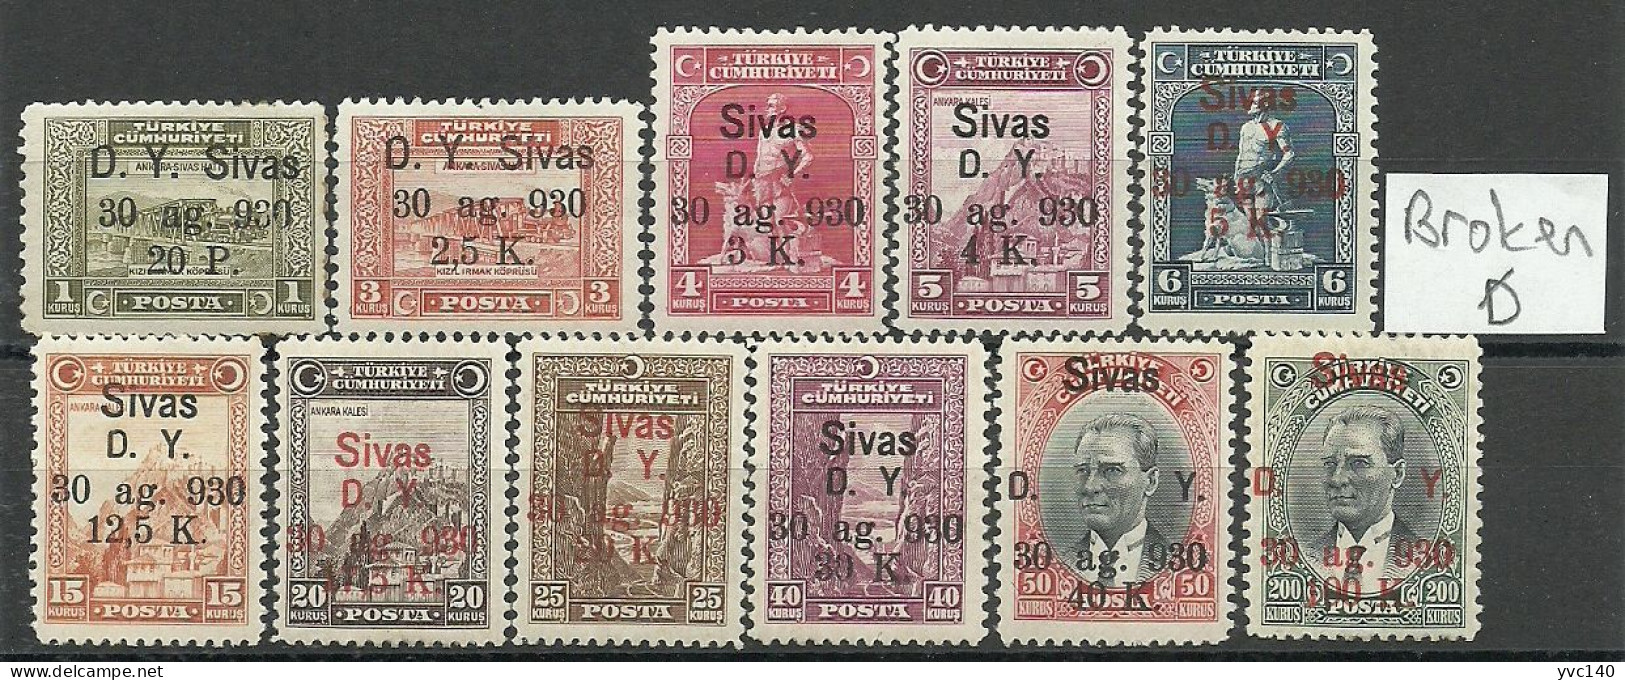 Turkey; 1930 Ankara-Sivas Railway Stamps "Broken (D)" ERROR MNH**/MH* RRR - Nuovi